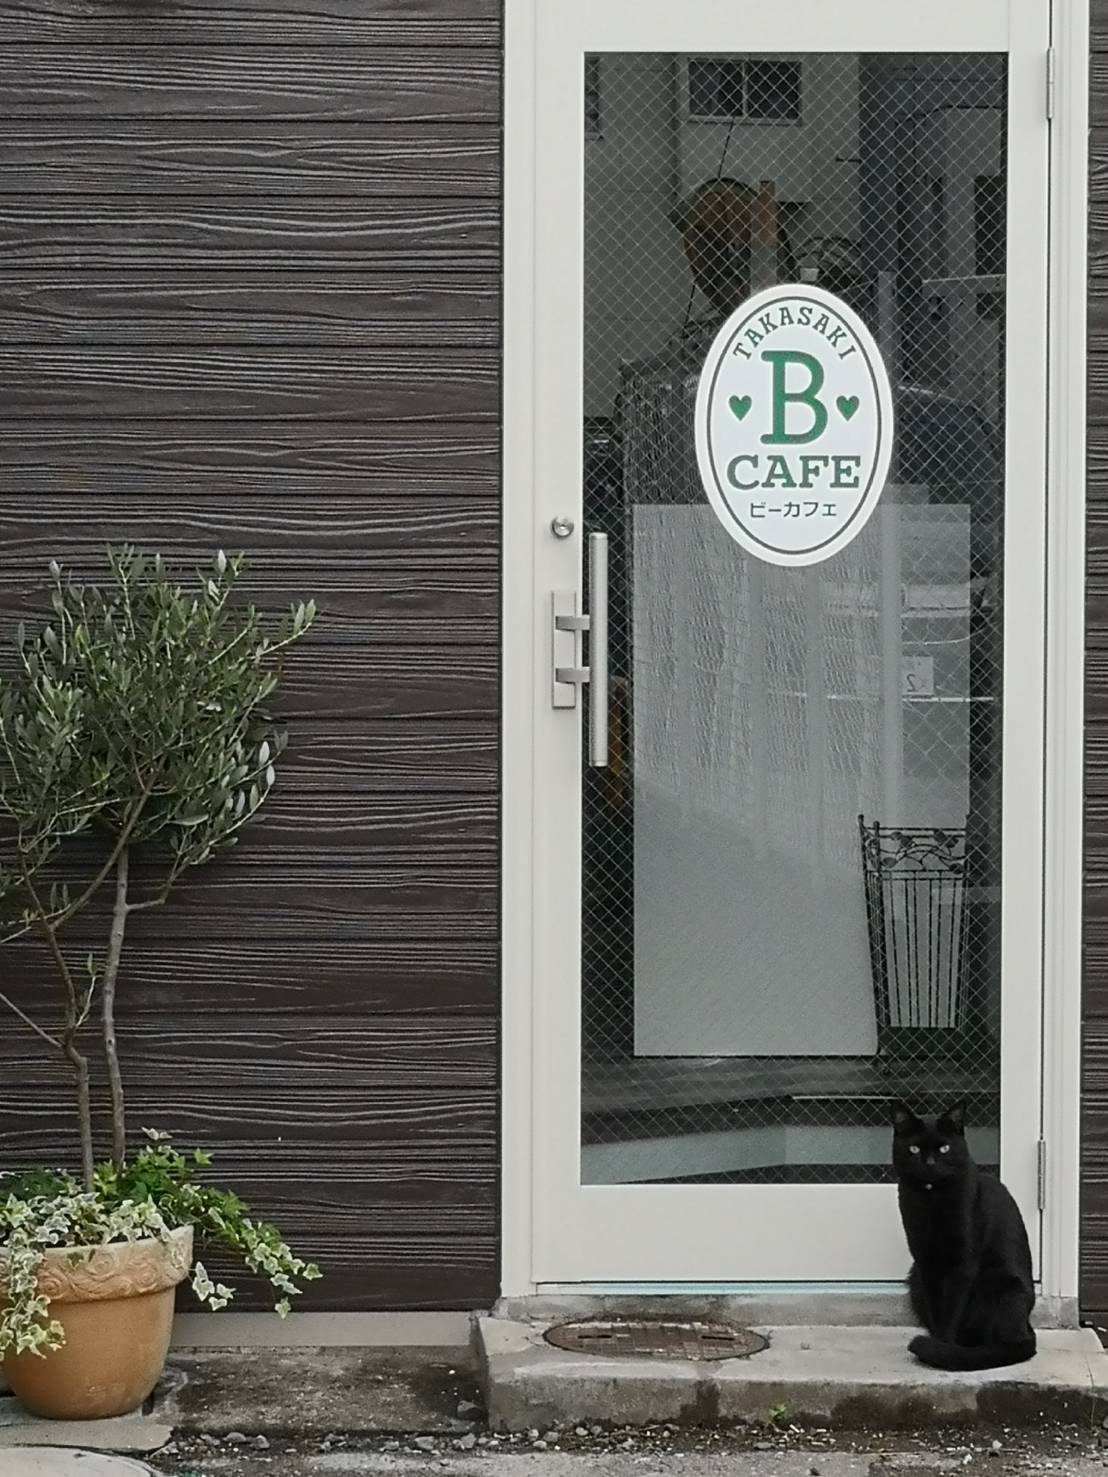 猫カフェ並みに猫が遊びに来る 占い館ビーカフェ群馬高崎店 群馬高崎占いなら 占い館bcafe ビーカフェ 群馬高崎店 のブログ